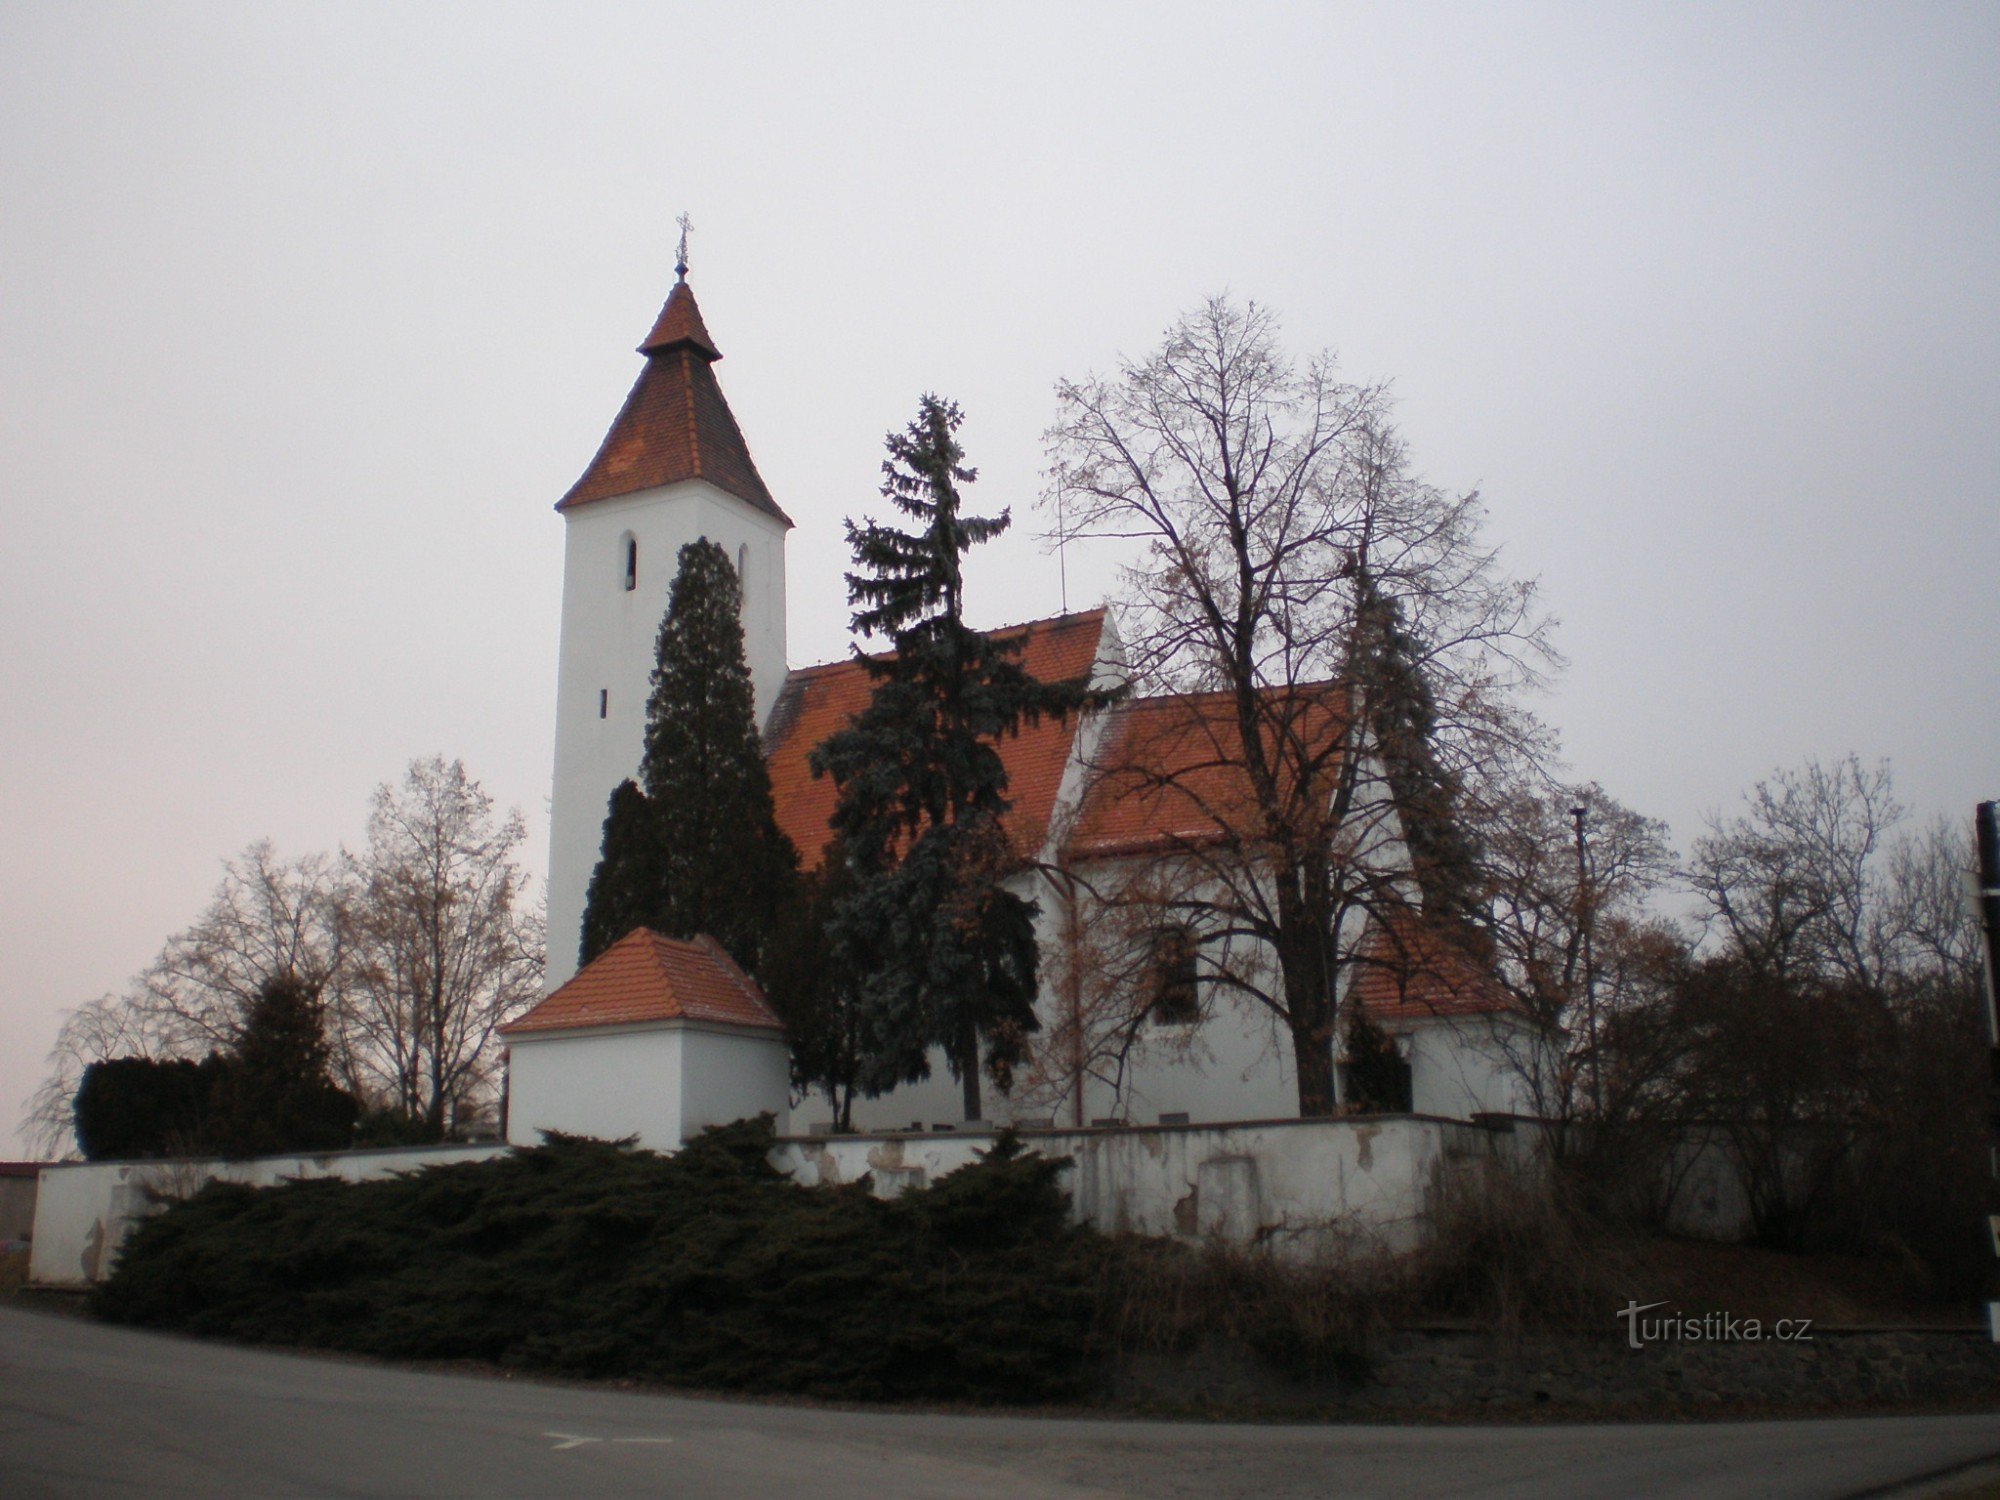 Hovorčovice - Pyhän syntymän kirkko. Johannes Kastaja